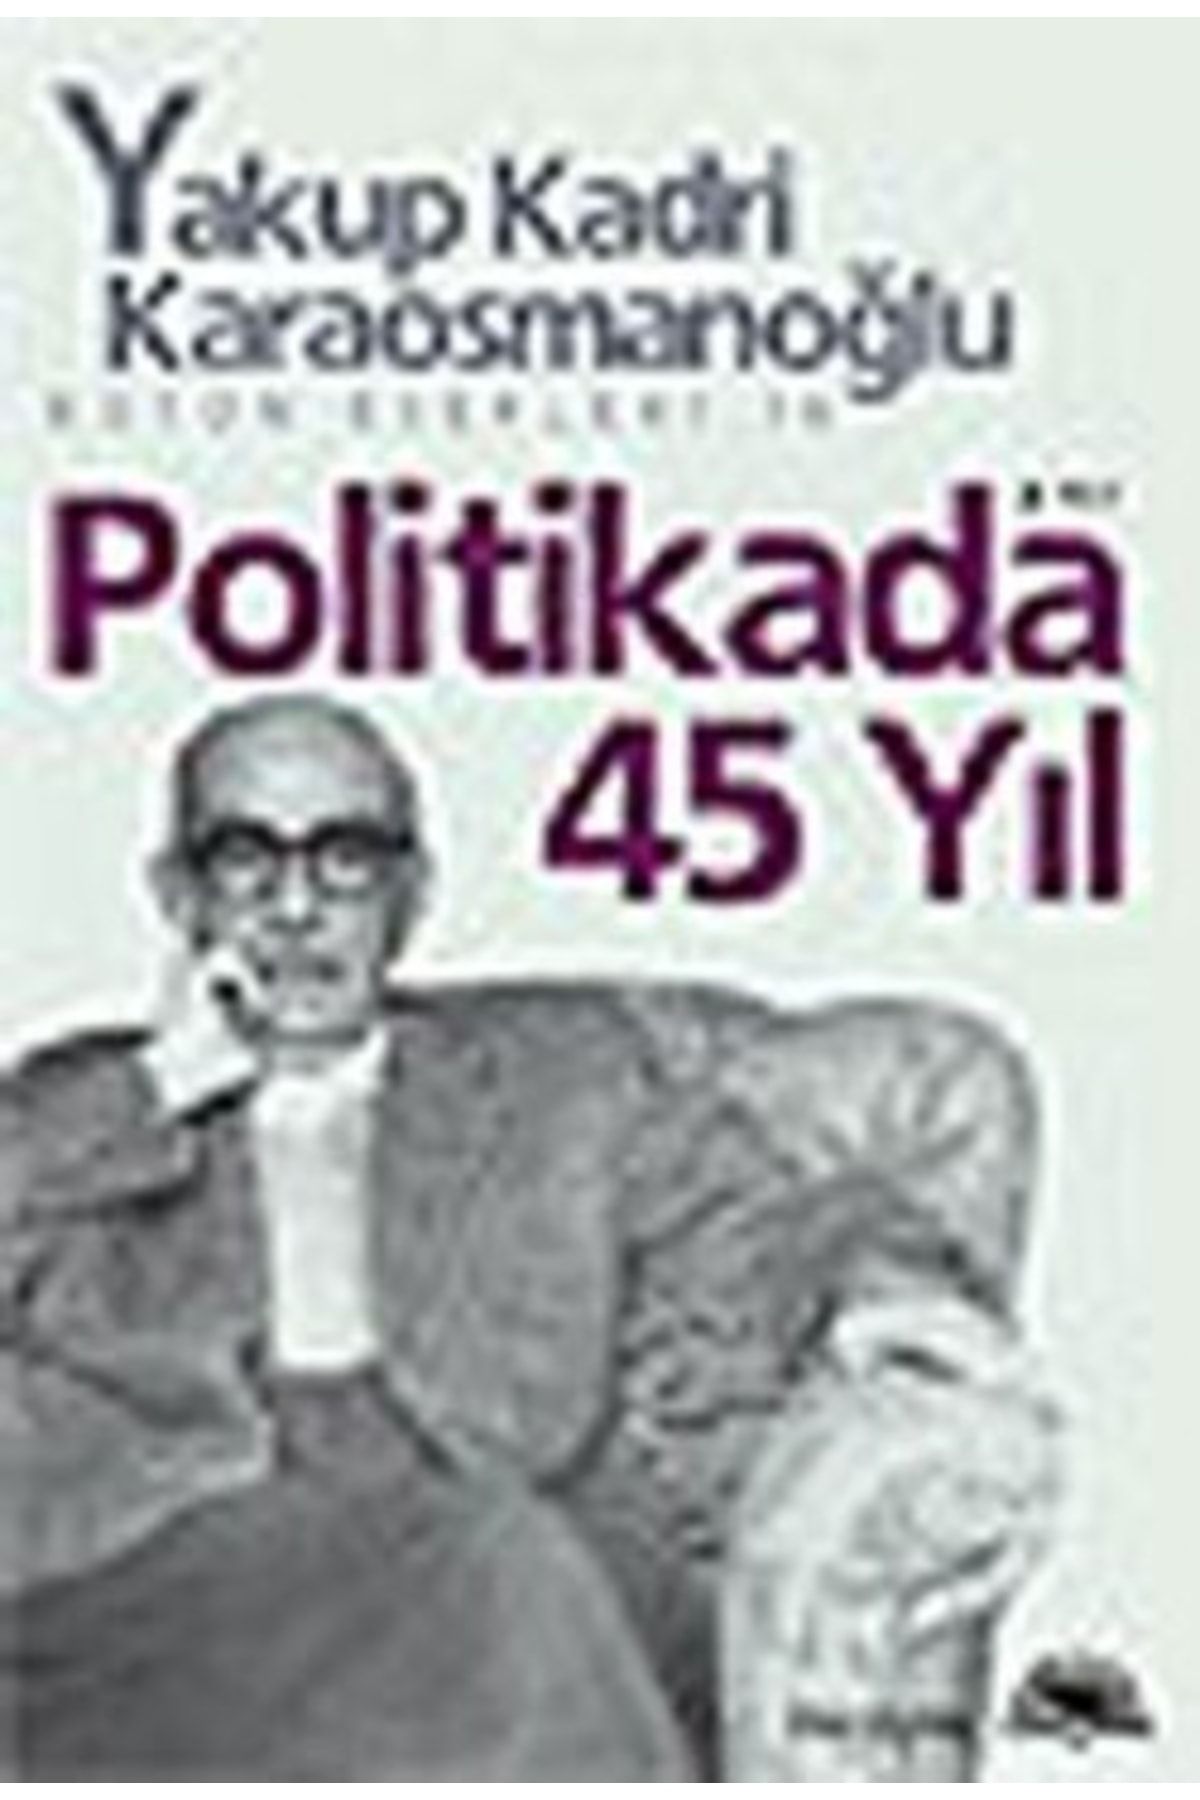 İletişim Yayınları Politikada 45 Yıl - Yakup Kadri Karaosmanoğlu